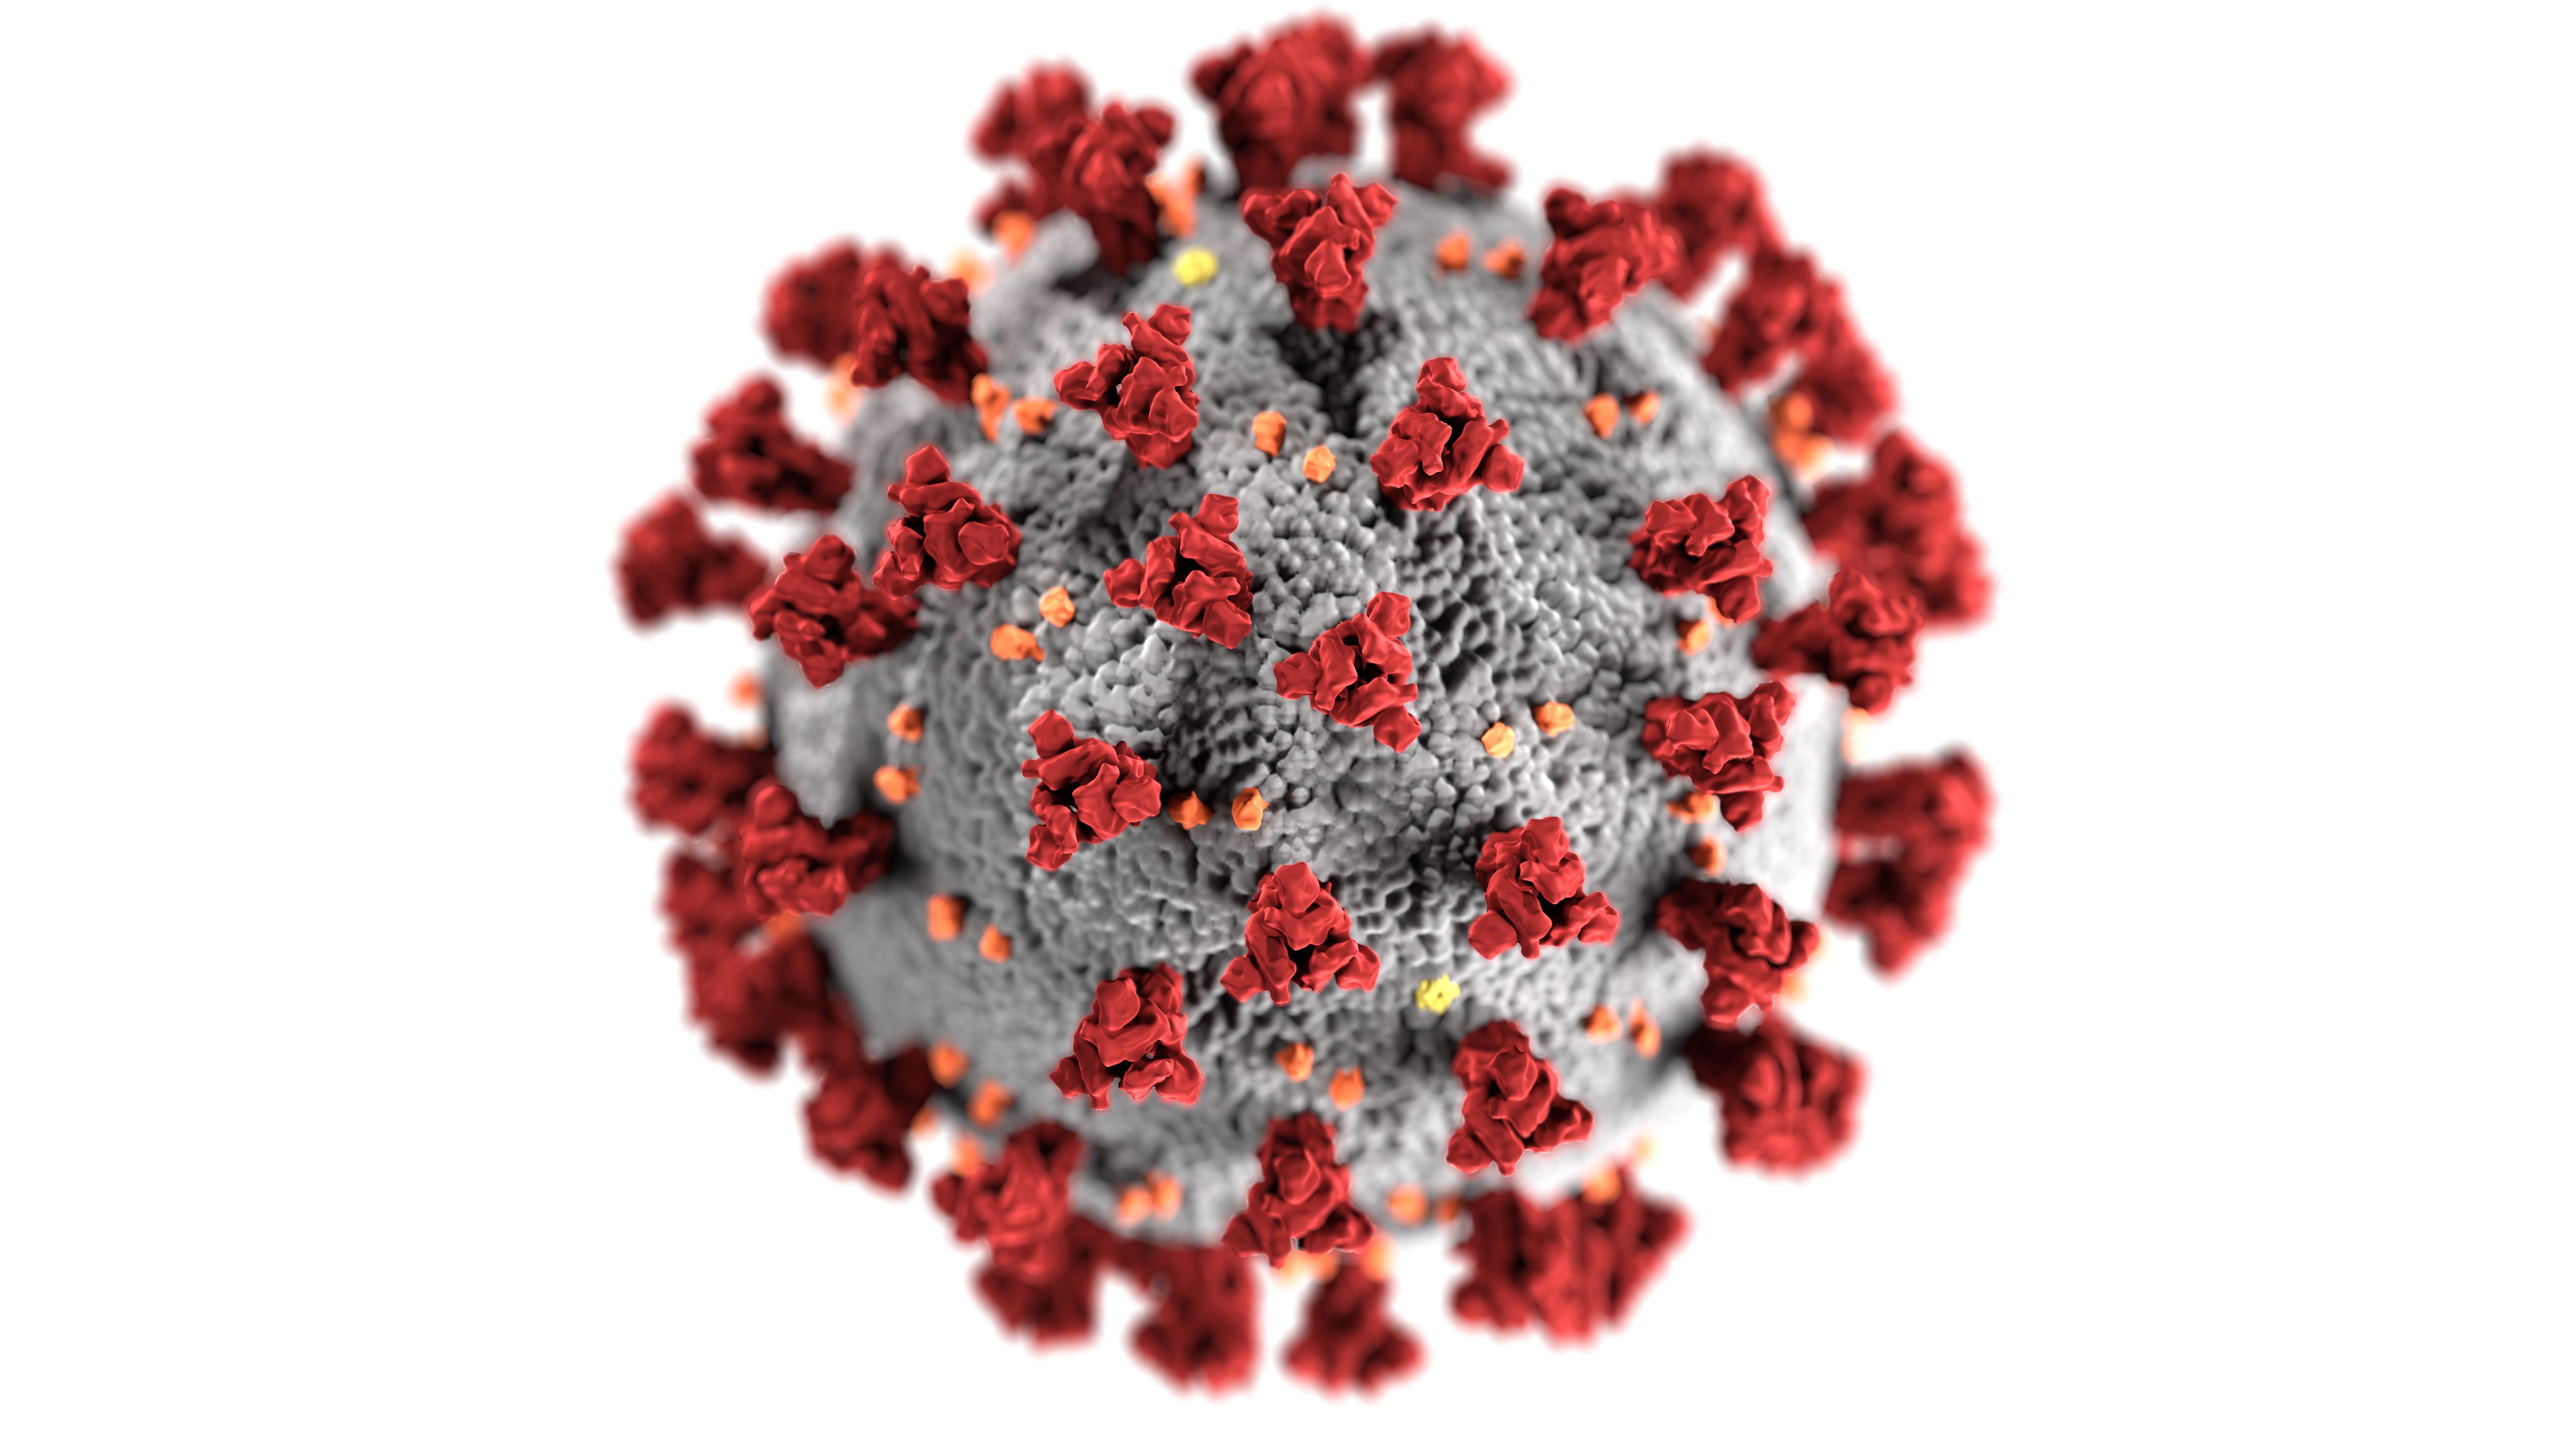 Koronavírusy tvoria veľkú rodinu vírusov. Môžu spôsobiť mierne prechladnutie, no aj závažné, v niektorých prípadoch dokonca fatálne ochorenie dýchacích ciest. 